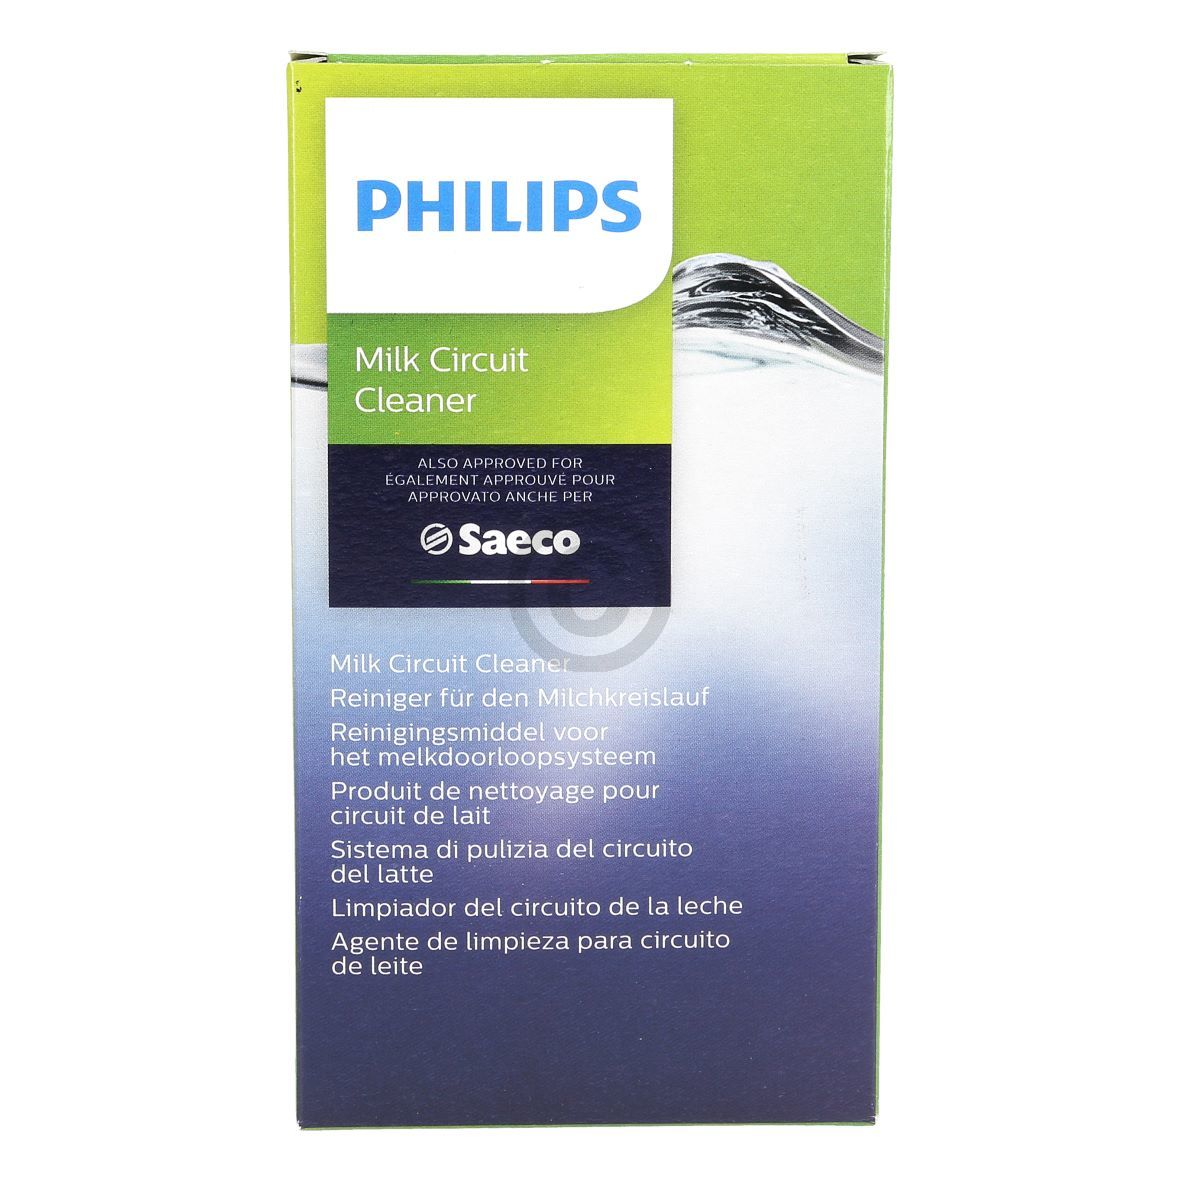 Milchkreislaufreiniger PHILIPS Saeco CA6705/10 für Kaffeemaschine Kaffeeautomat 6x2g